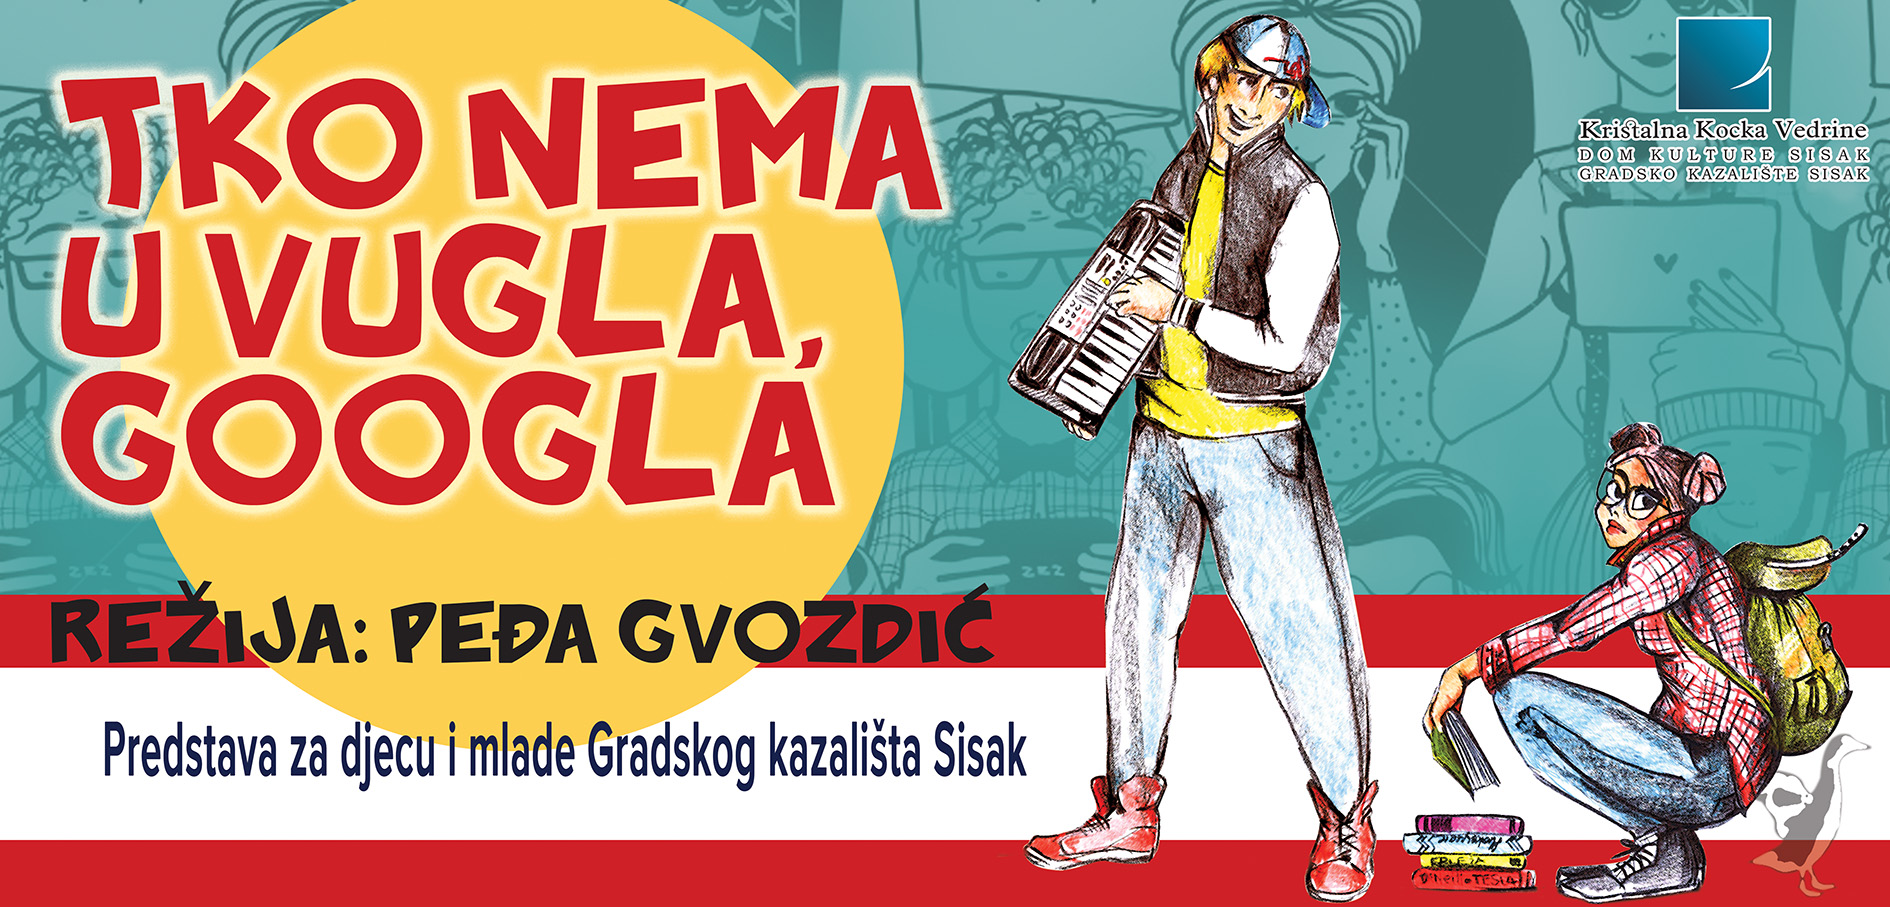 You are currently viewing “Tko nema u vugla, googla” za osnovnoškolce 22. Lipnja